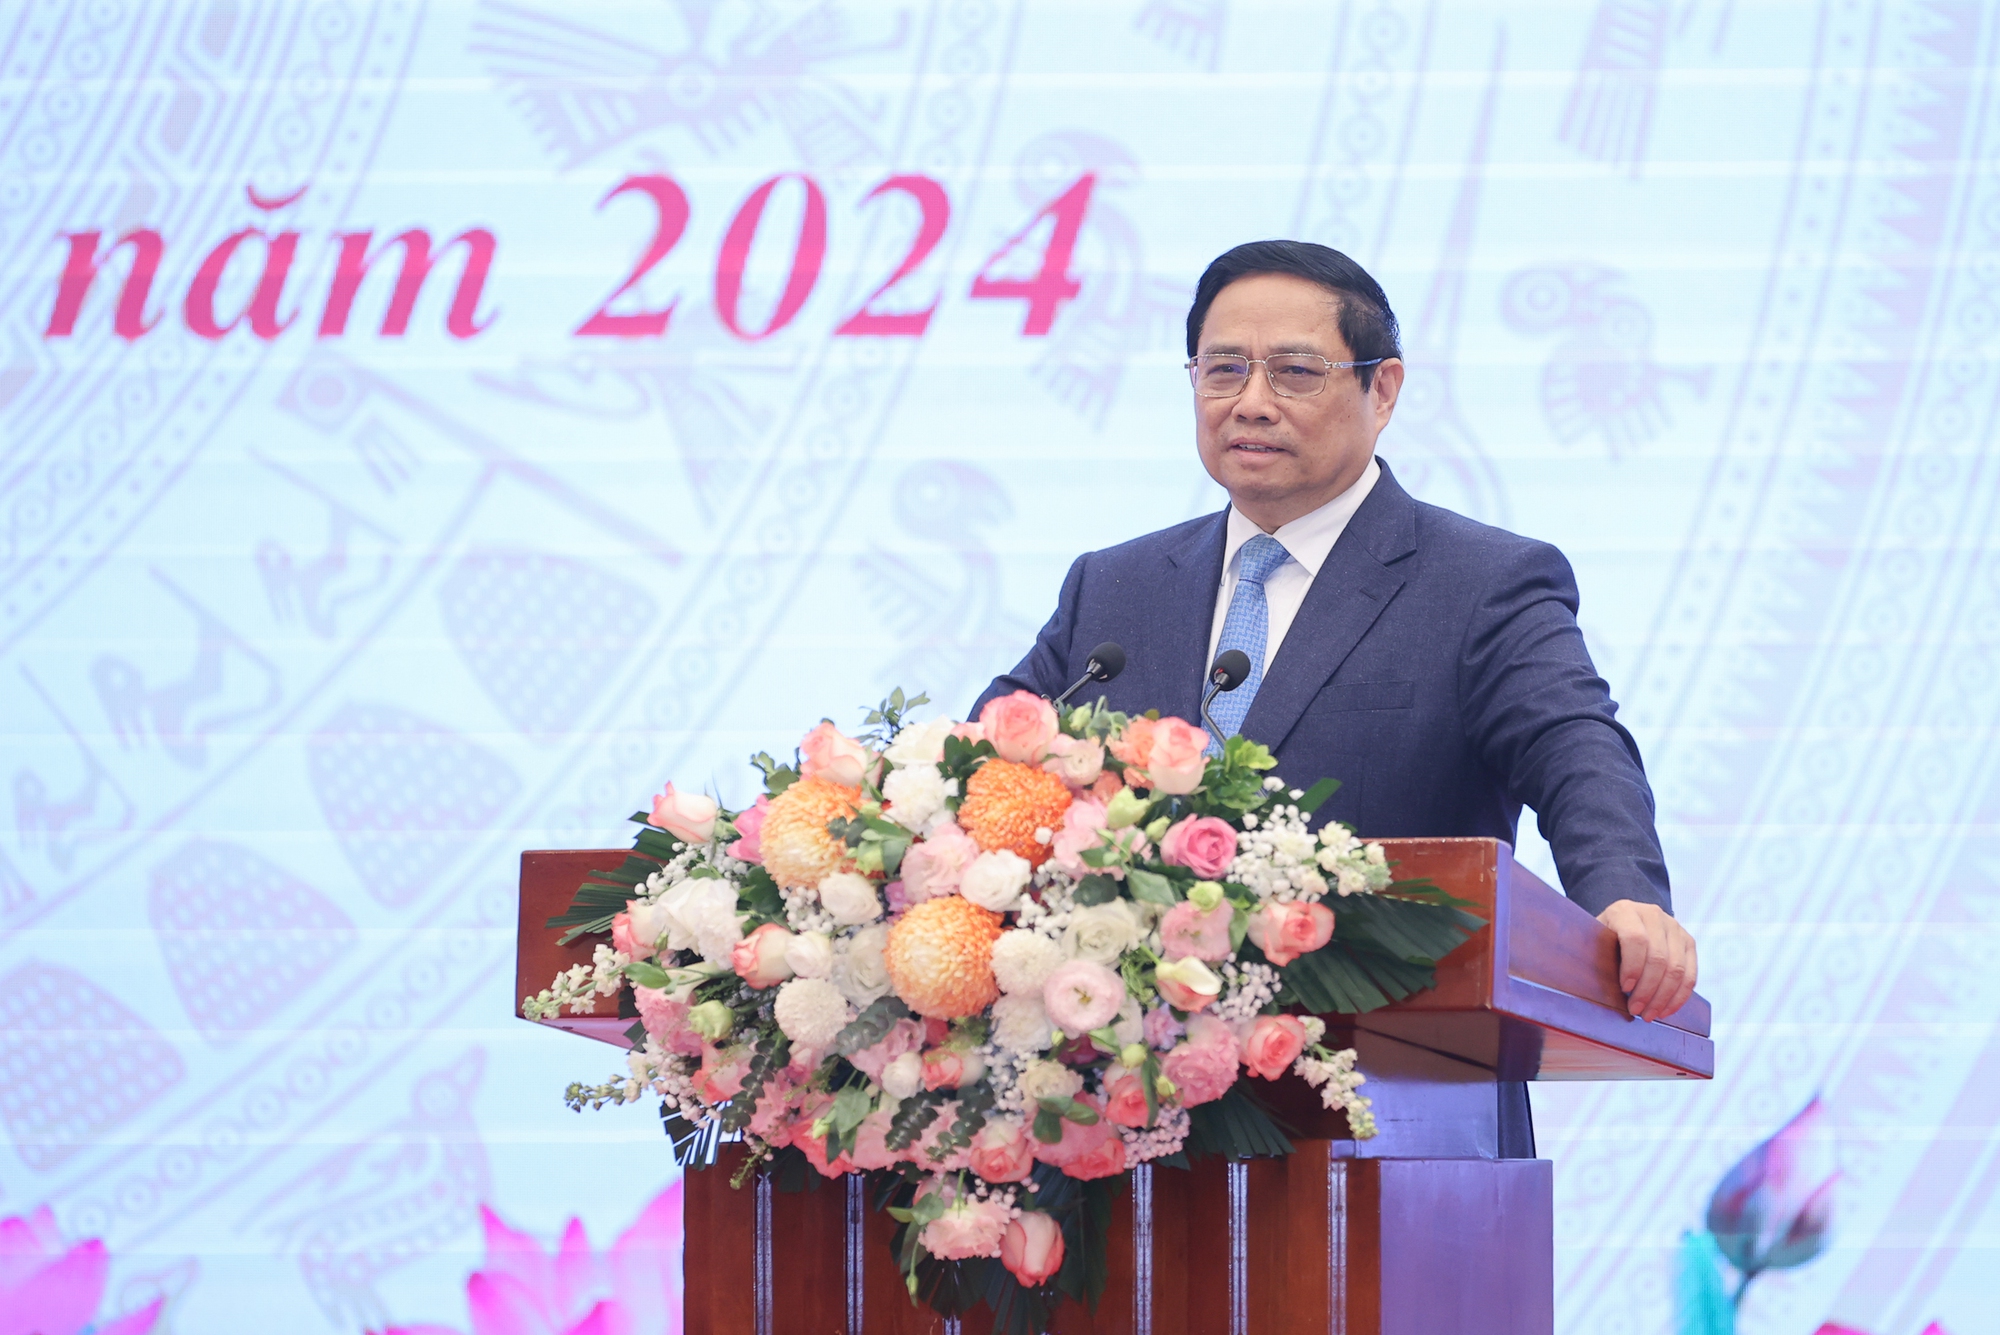 Thủ tướng Phạm Minh Chính nhấn mạnh tinh thần cần tự tin hơn, bản lĩnh hơn để phát huy tối đa sức mạnh của nền văn hóa, sức mạnh nội sinh, sức mạnh con người Việt Nam, vững bước đi lên - Ảnh: VGP/Nhật Bắc